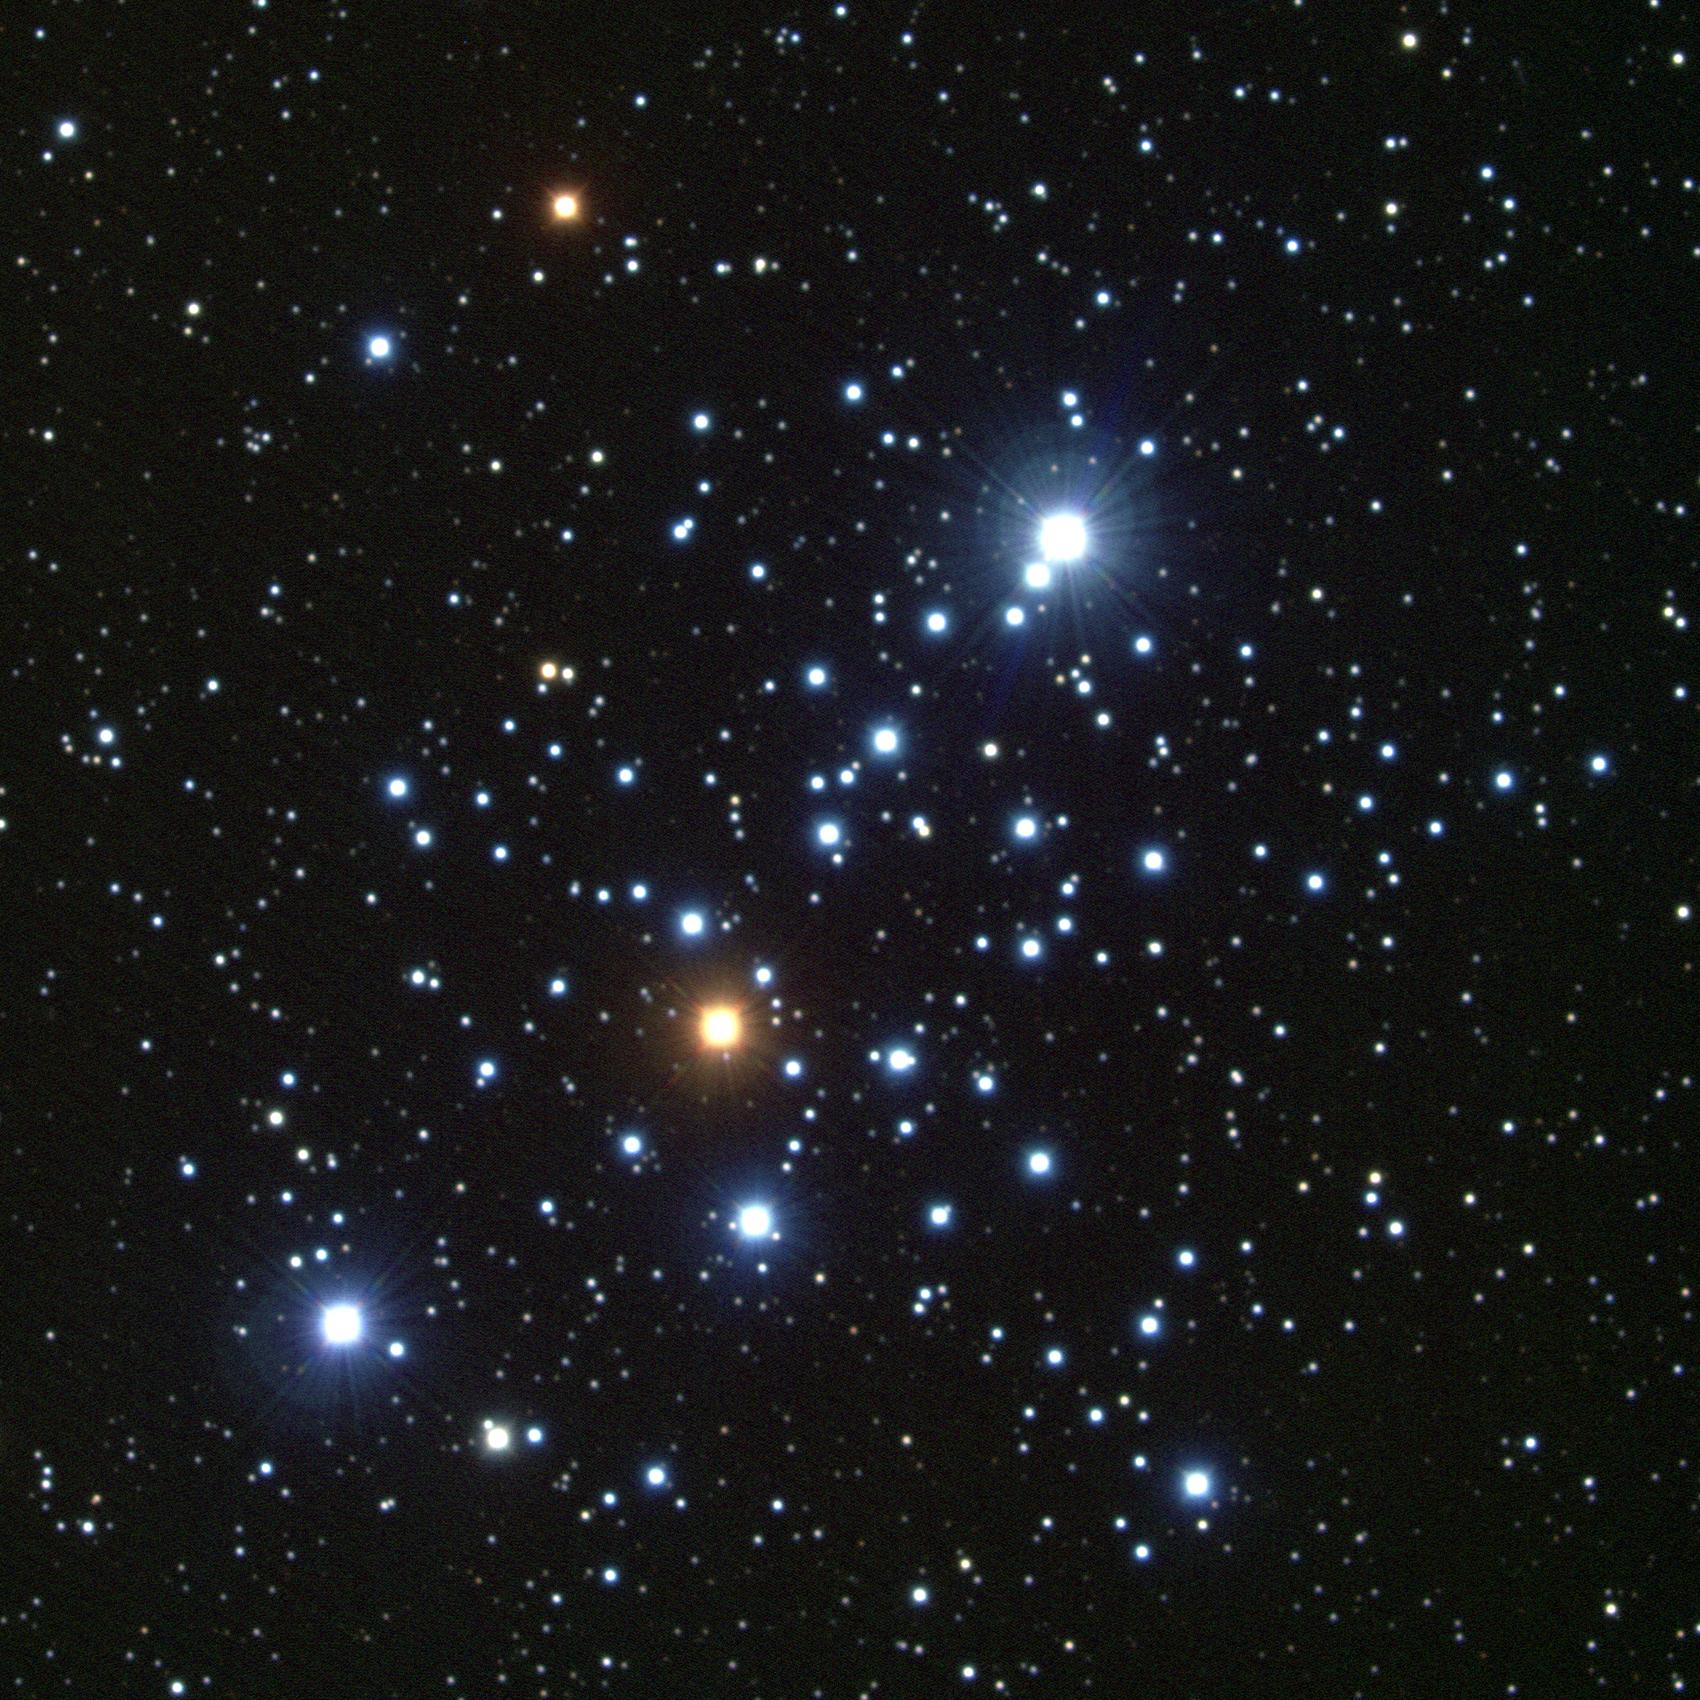 NGC 581